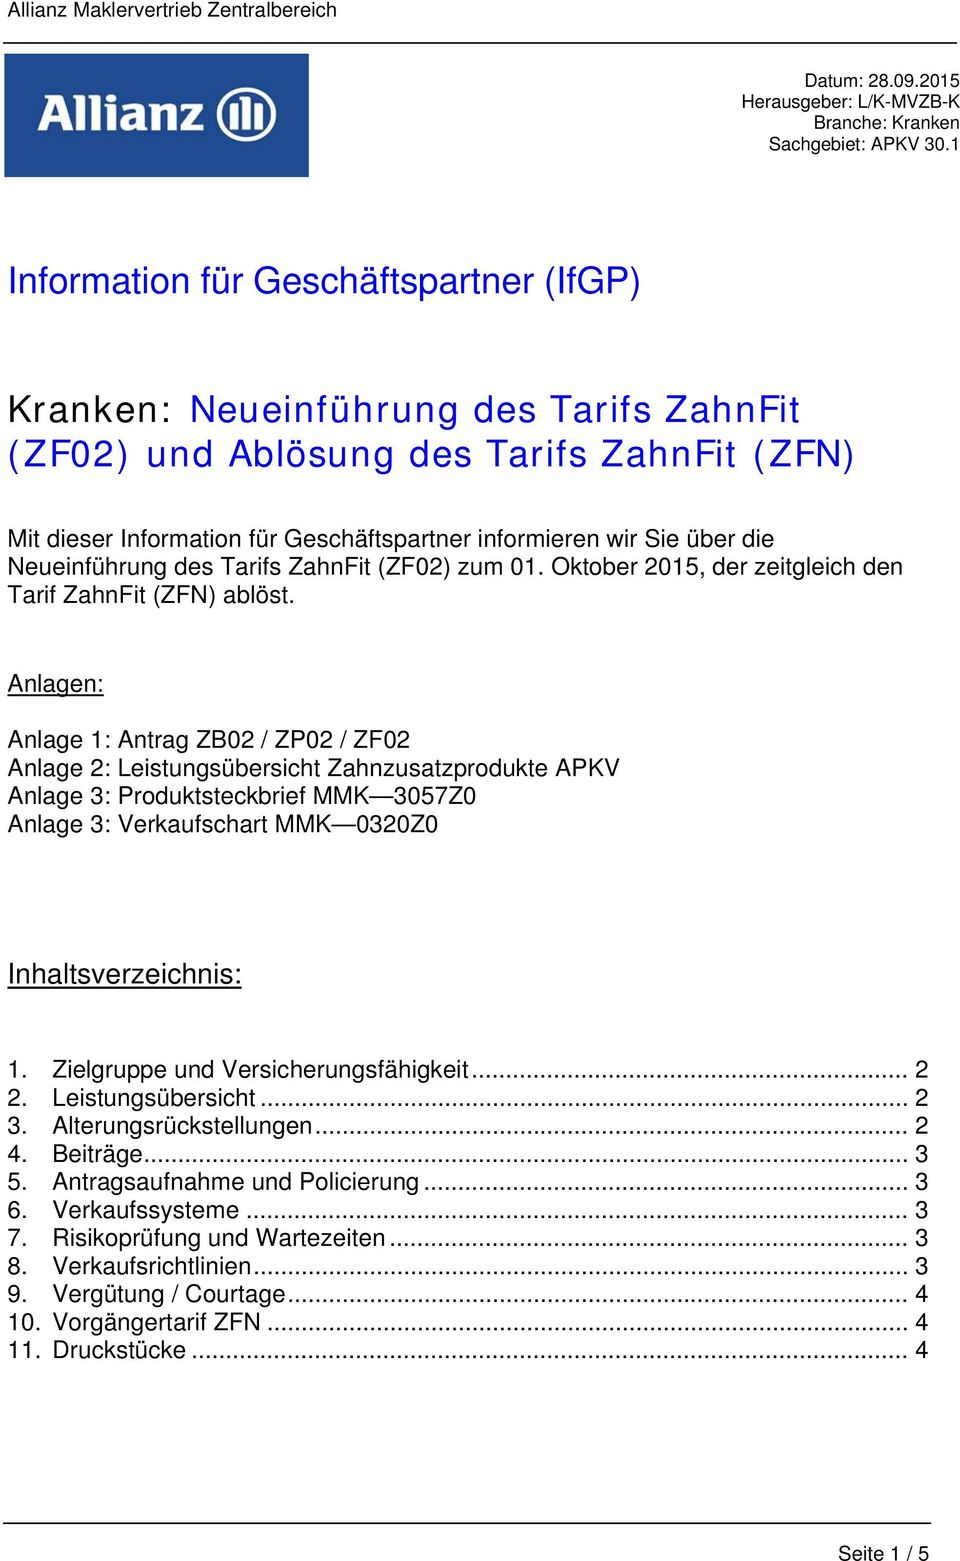 die Neueinführung des Tarifs ZahnFit (ZF02) zum 01. Oktober 2015, der zeitgleich den Tarif ZahnFit (ZFN) ablöst.